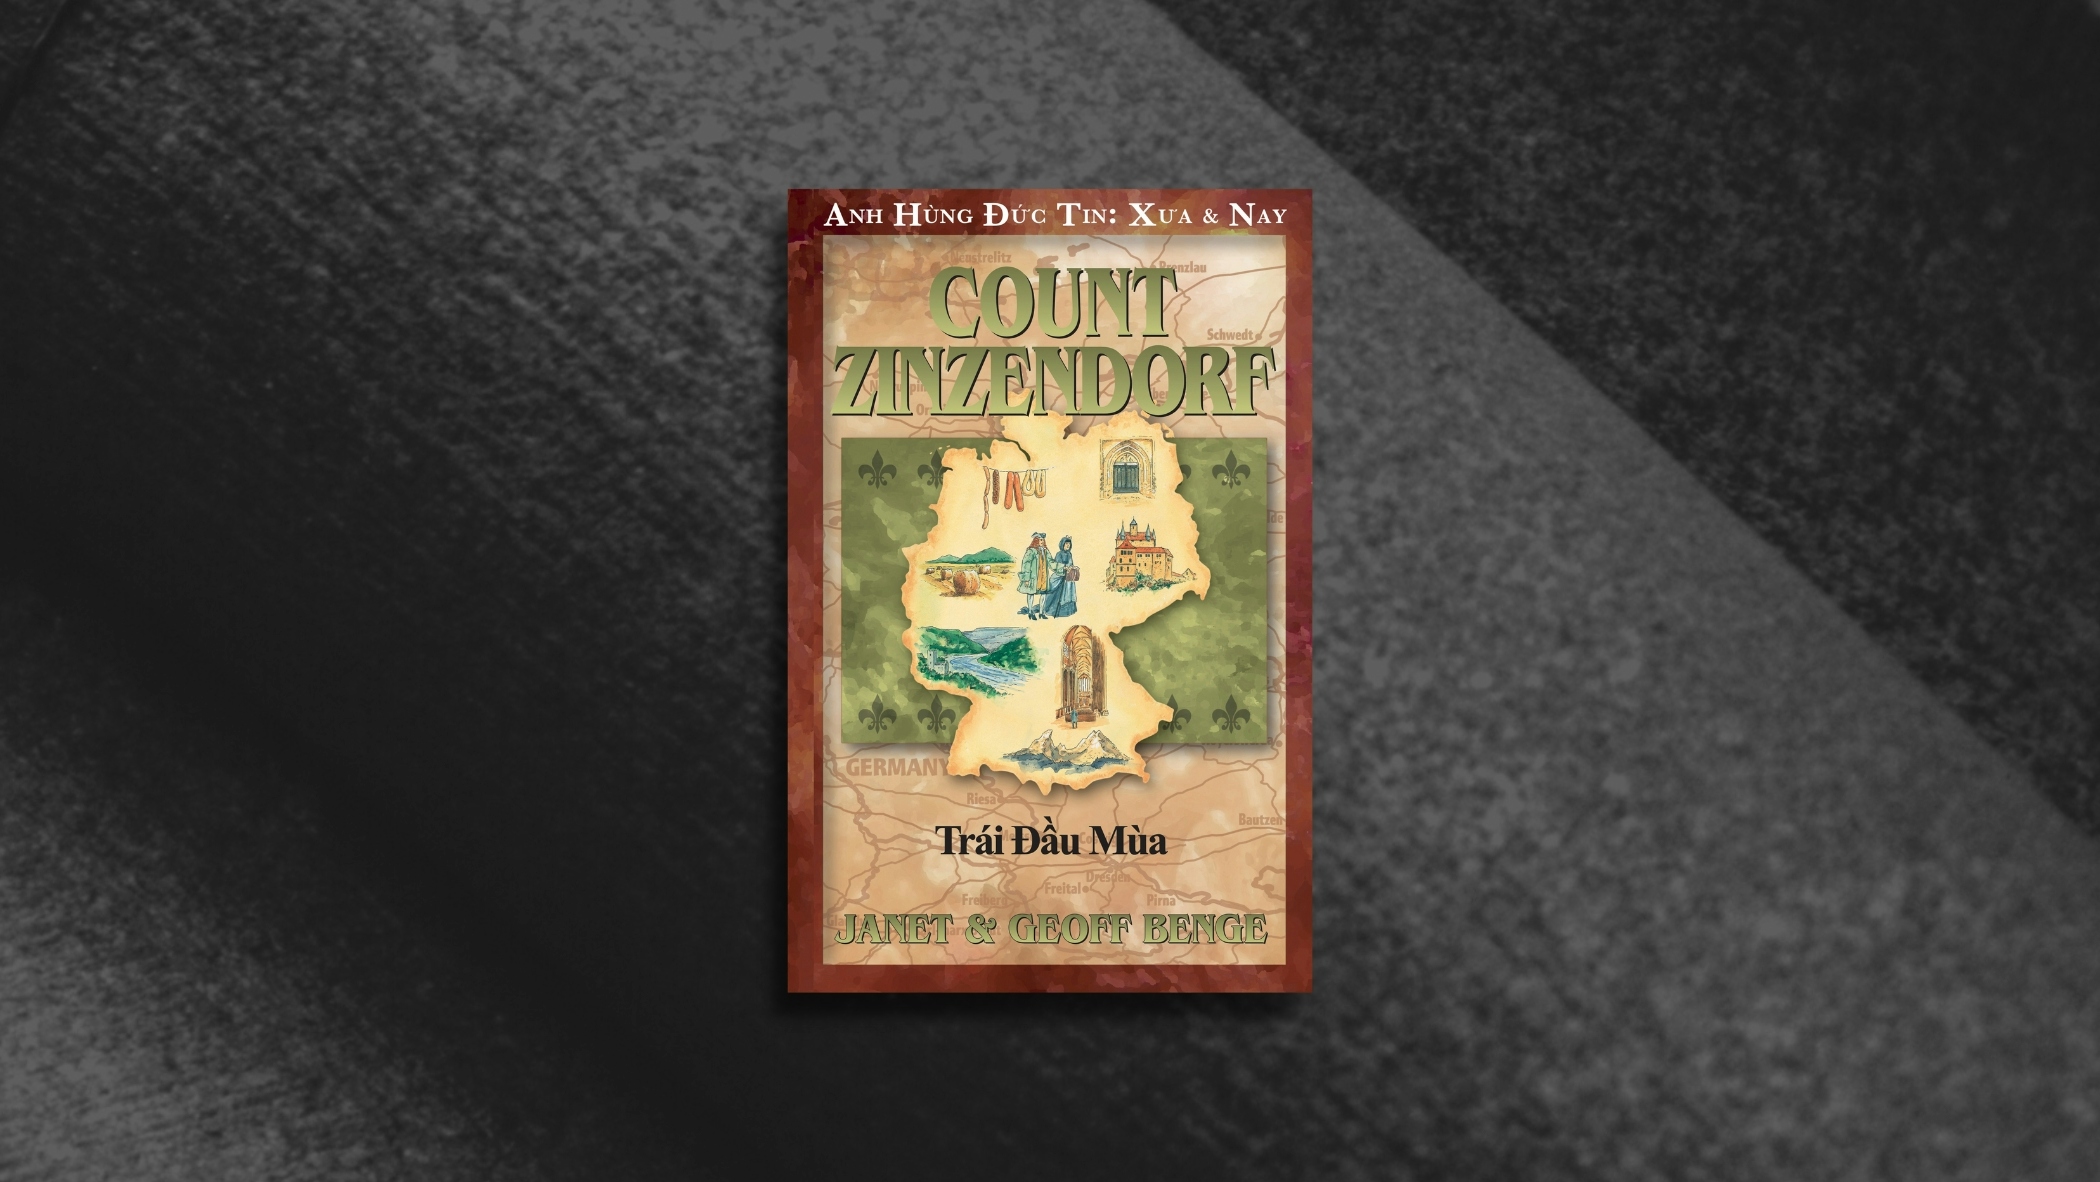 Ảnh đại diện của bài viết “Khi Bá tước Zinzendorf qua đời”